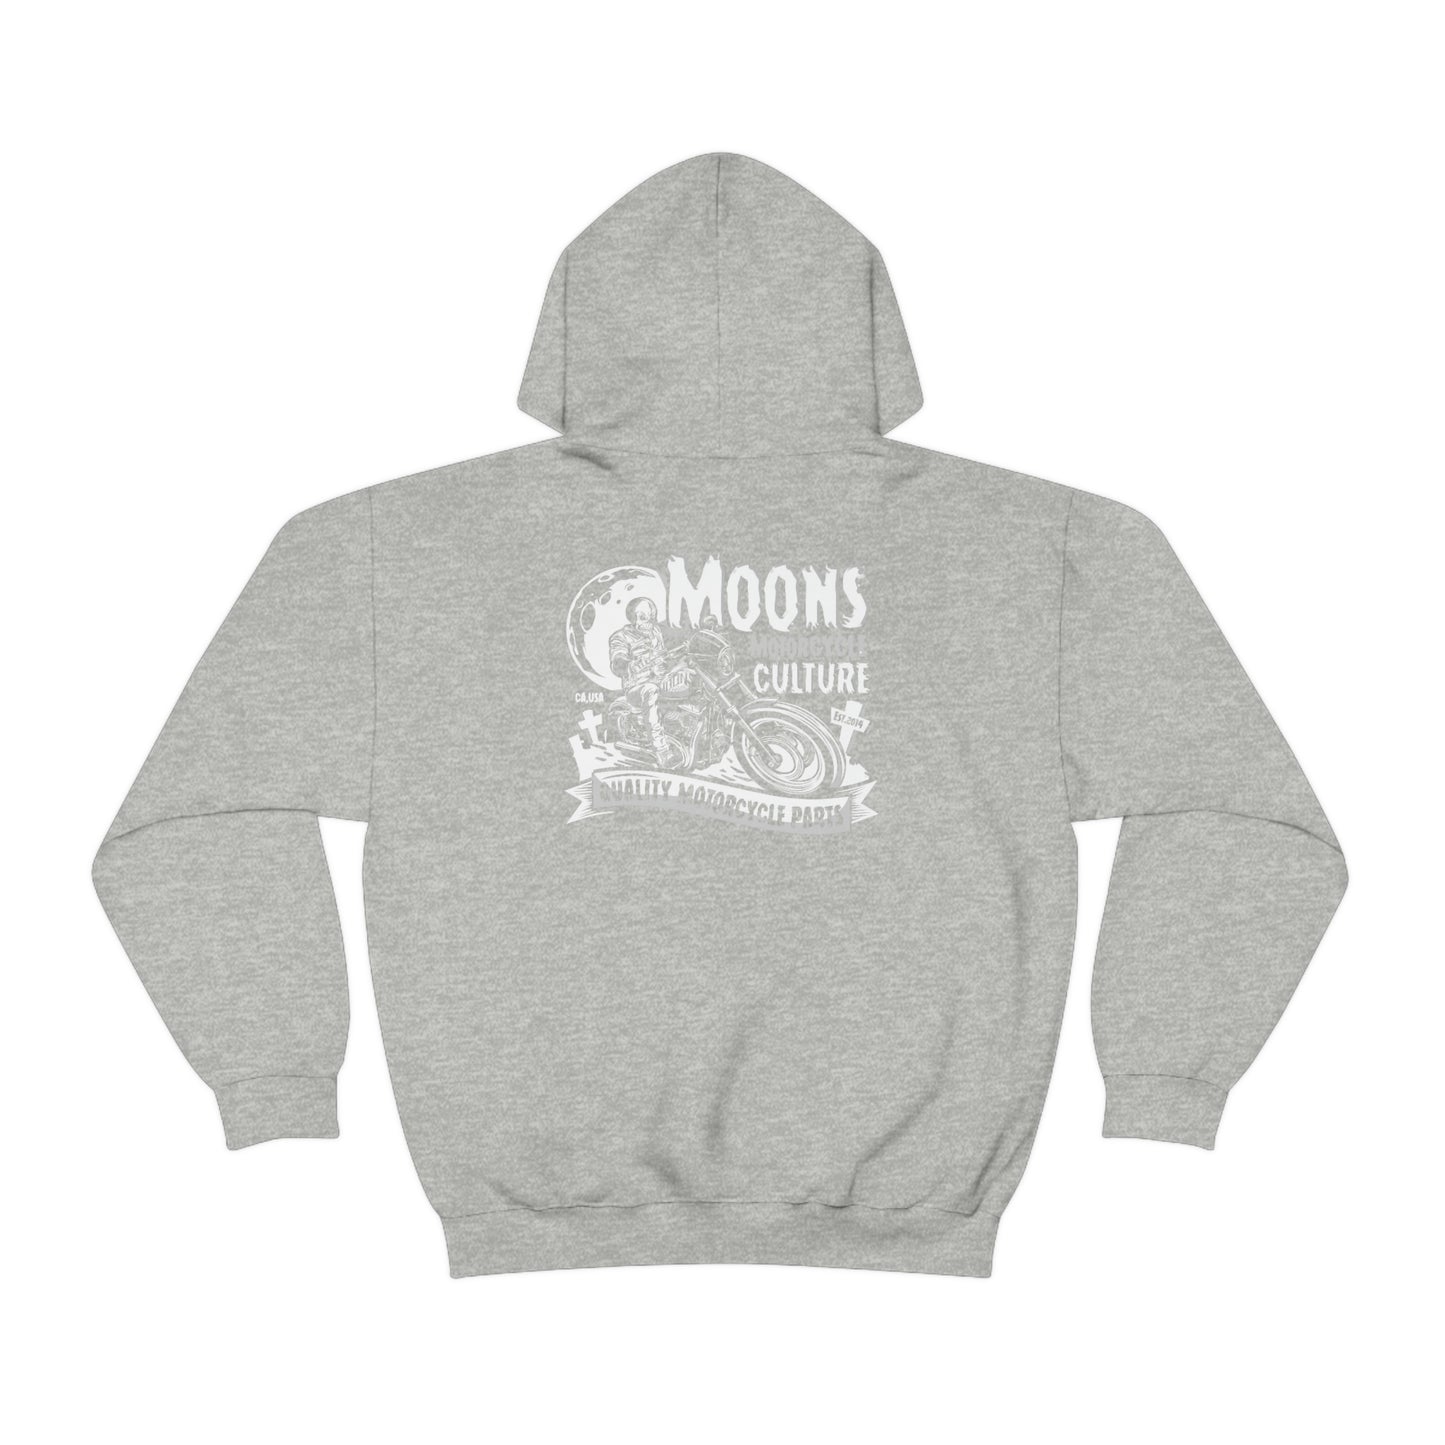 MOONSMC® FXLRS Skull Rider Hooded Sweatshirt